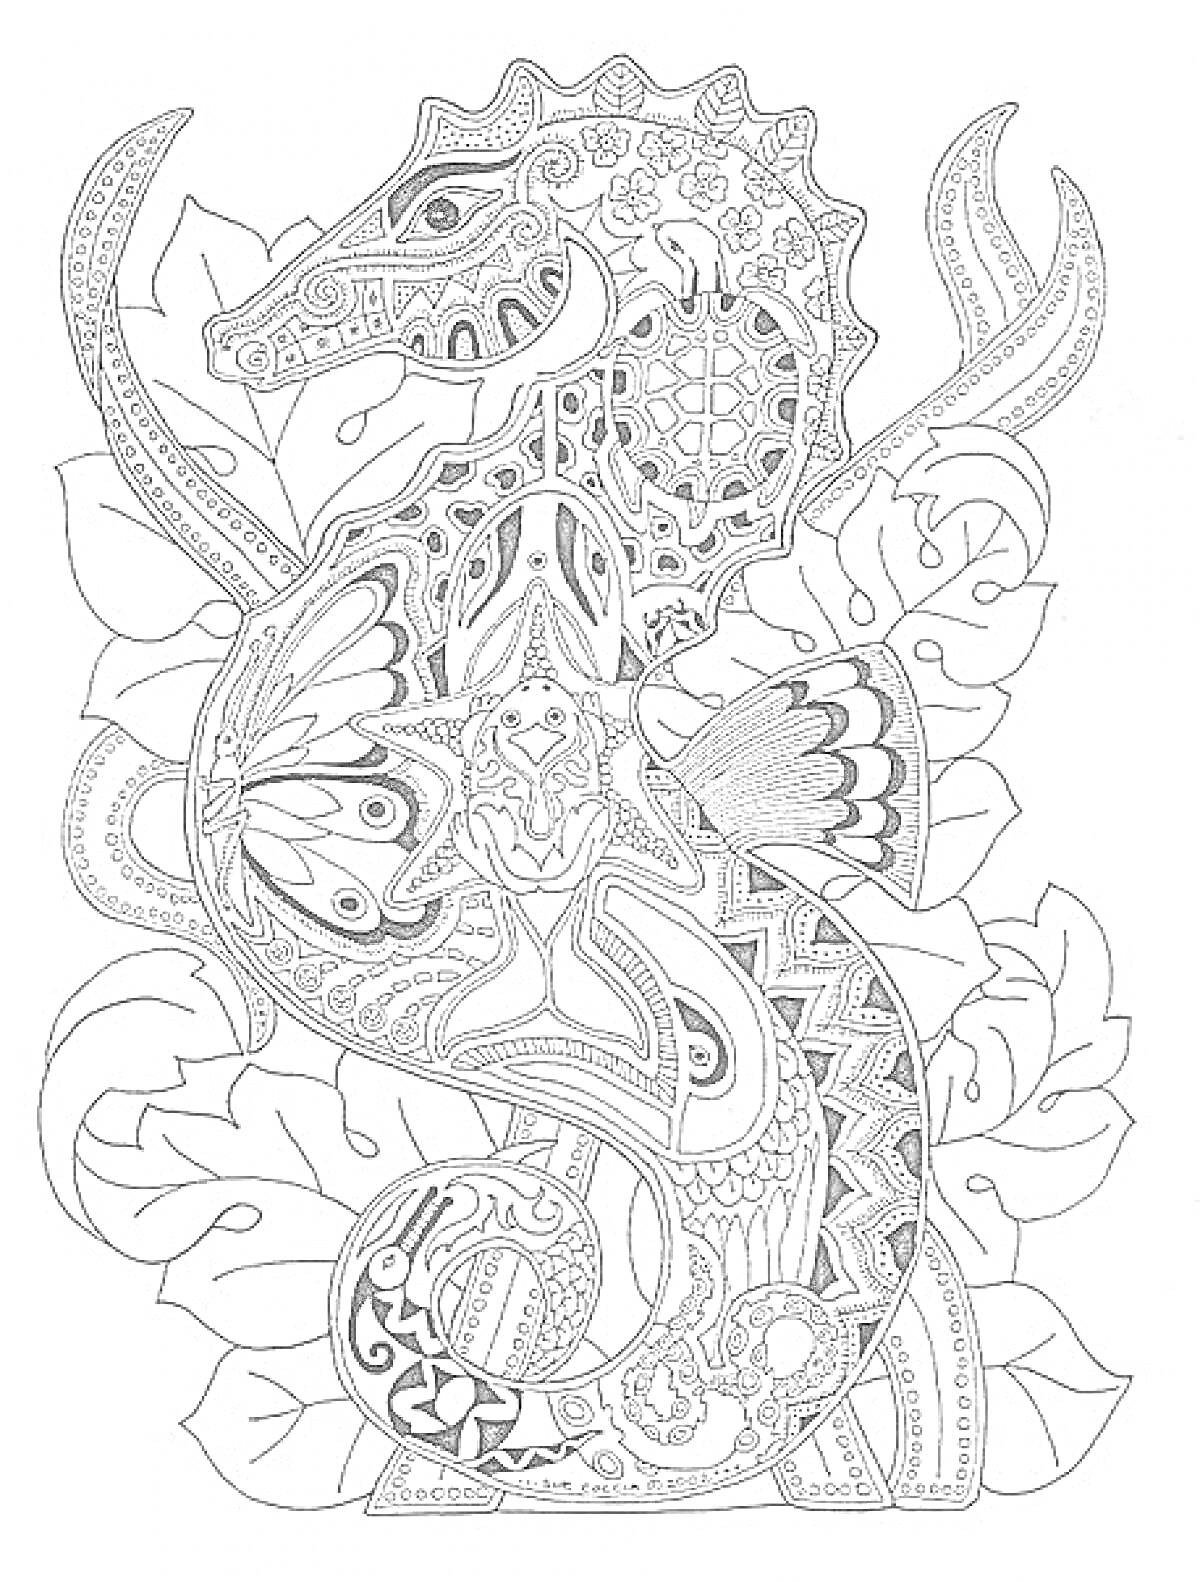 Раскраска Морской конек антистресс с множественными узорами, листьями и цветами